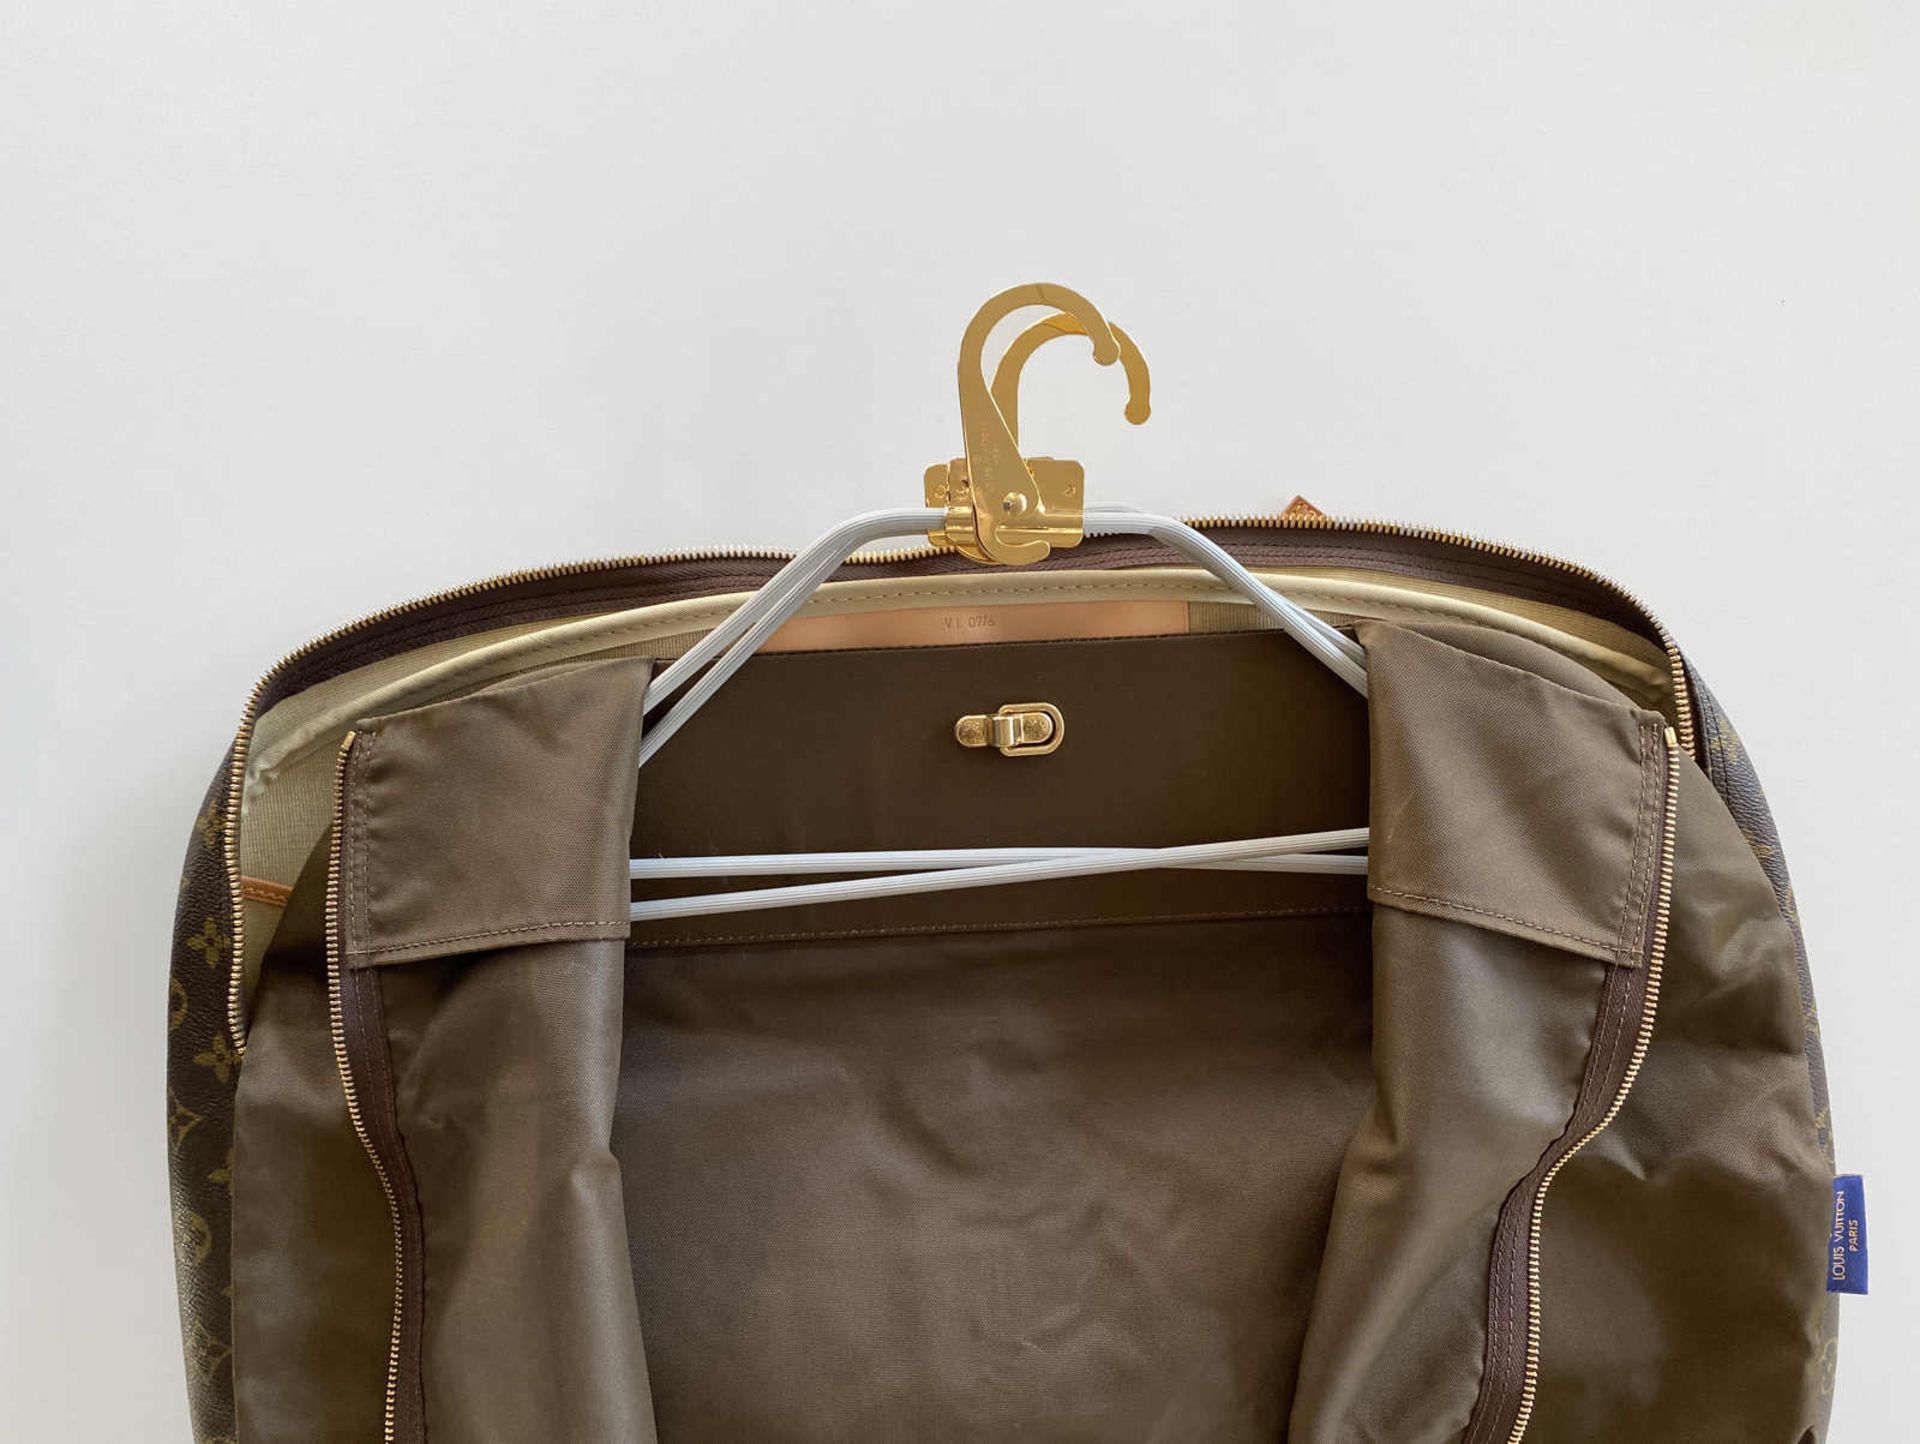 LOUIS VUITTON REISETASCHE ALIZÉ Praktisches Reisegepäck inkl. 2 Kleiderhüllen mit Louis Vuitton - Image 4 of 4